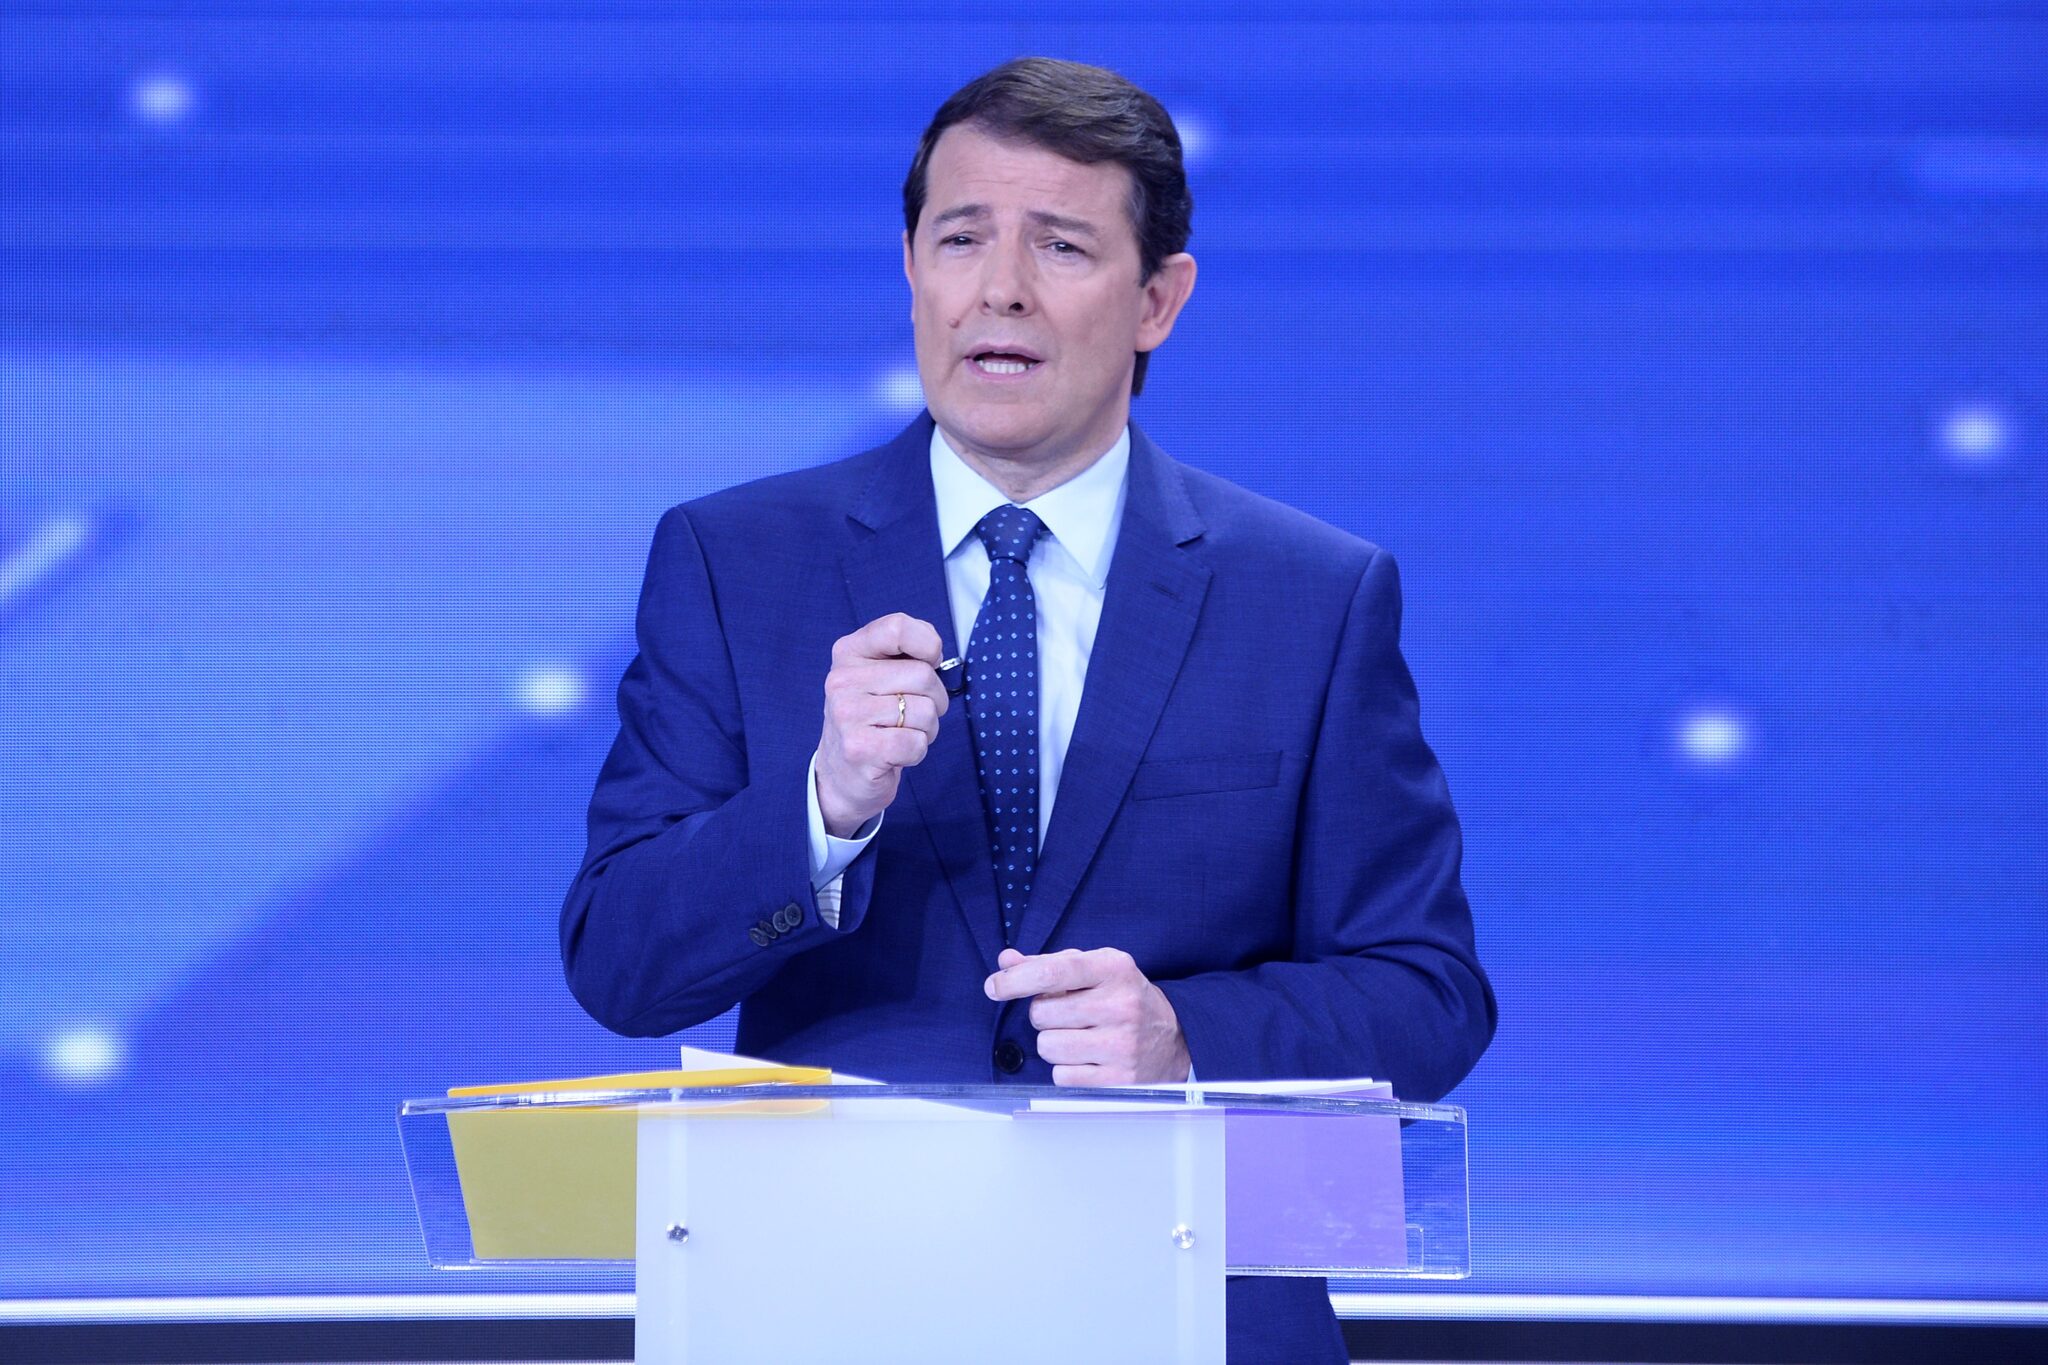 El candidato del PP a la Presidencia de la Junta de Castilla y León, Alfonso Fernández Mañueco, durante el segundo y último debate televisivo de cara a las elecciones autonómicas